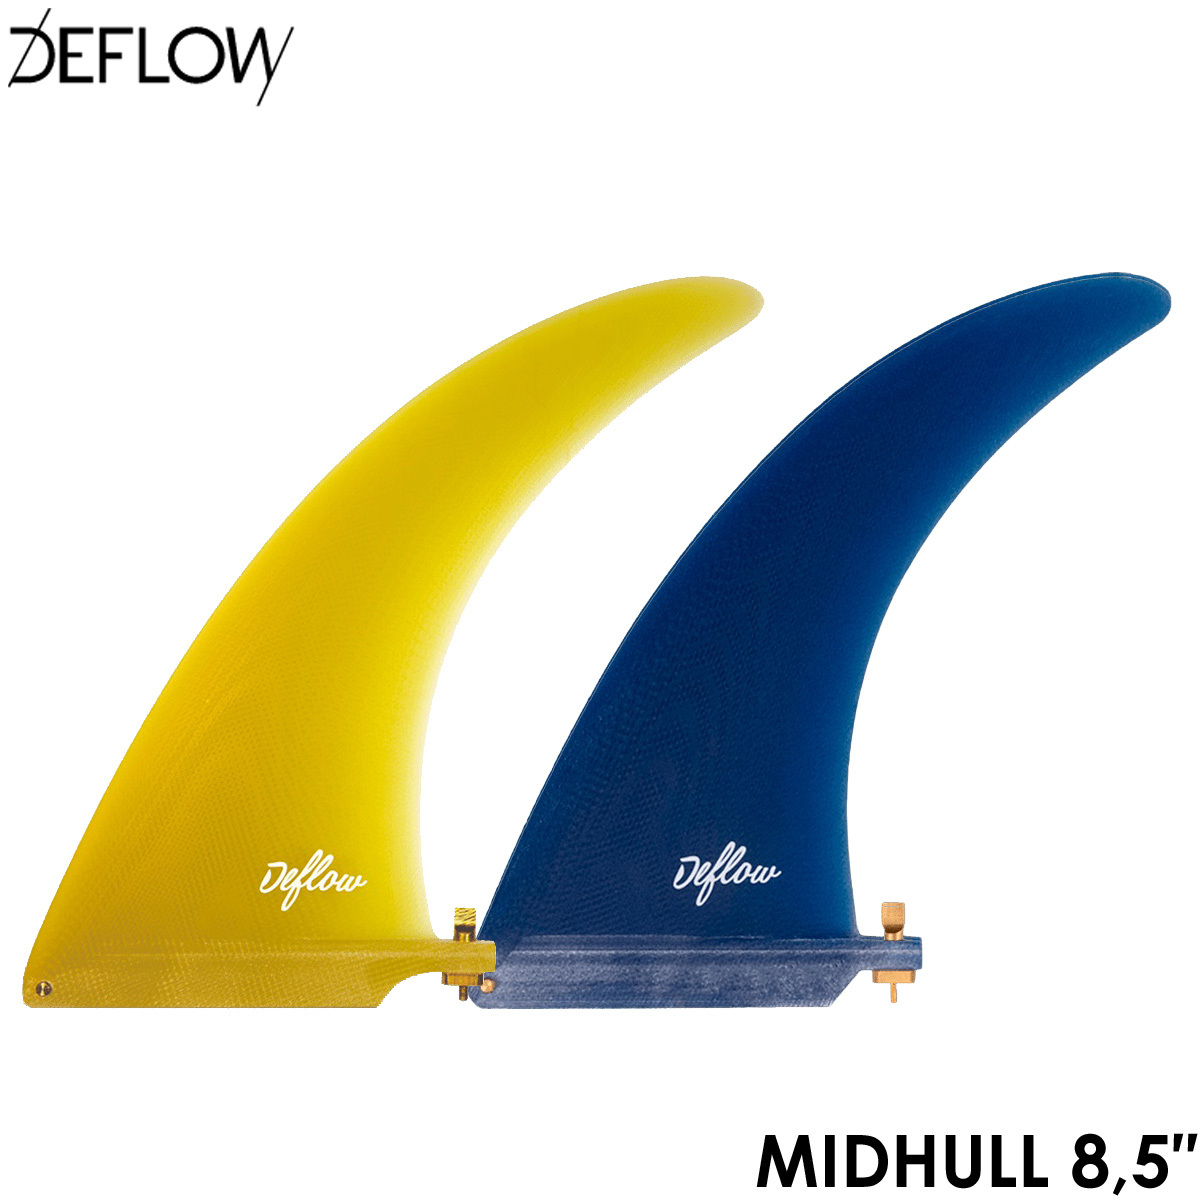 DEFLOW デフロー フィン MIDHULL 8.5" シングルフィン ロングボード センターフィン ミッドレングス シングルスタビ 2カラー サーフィン フランス デザイン